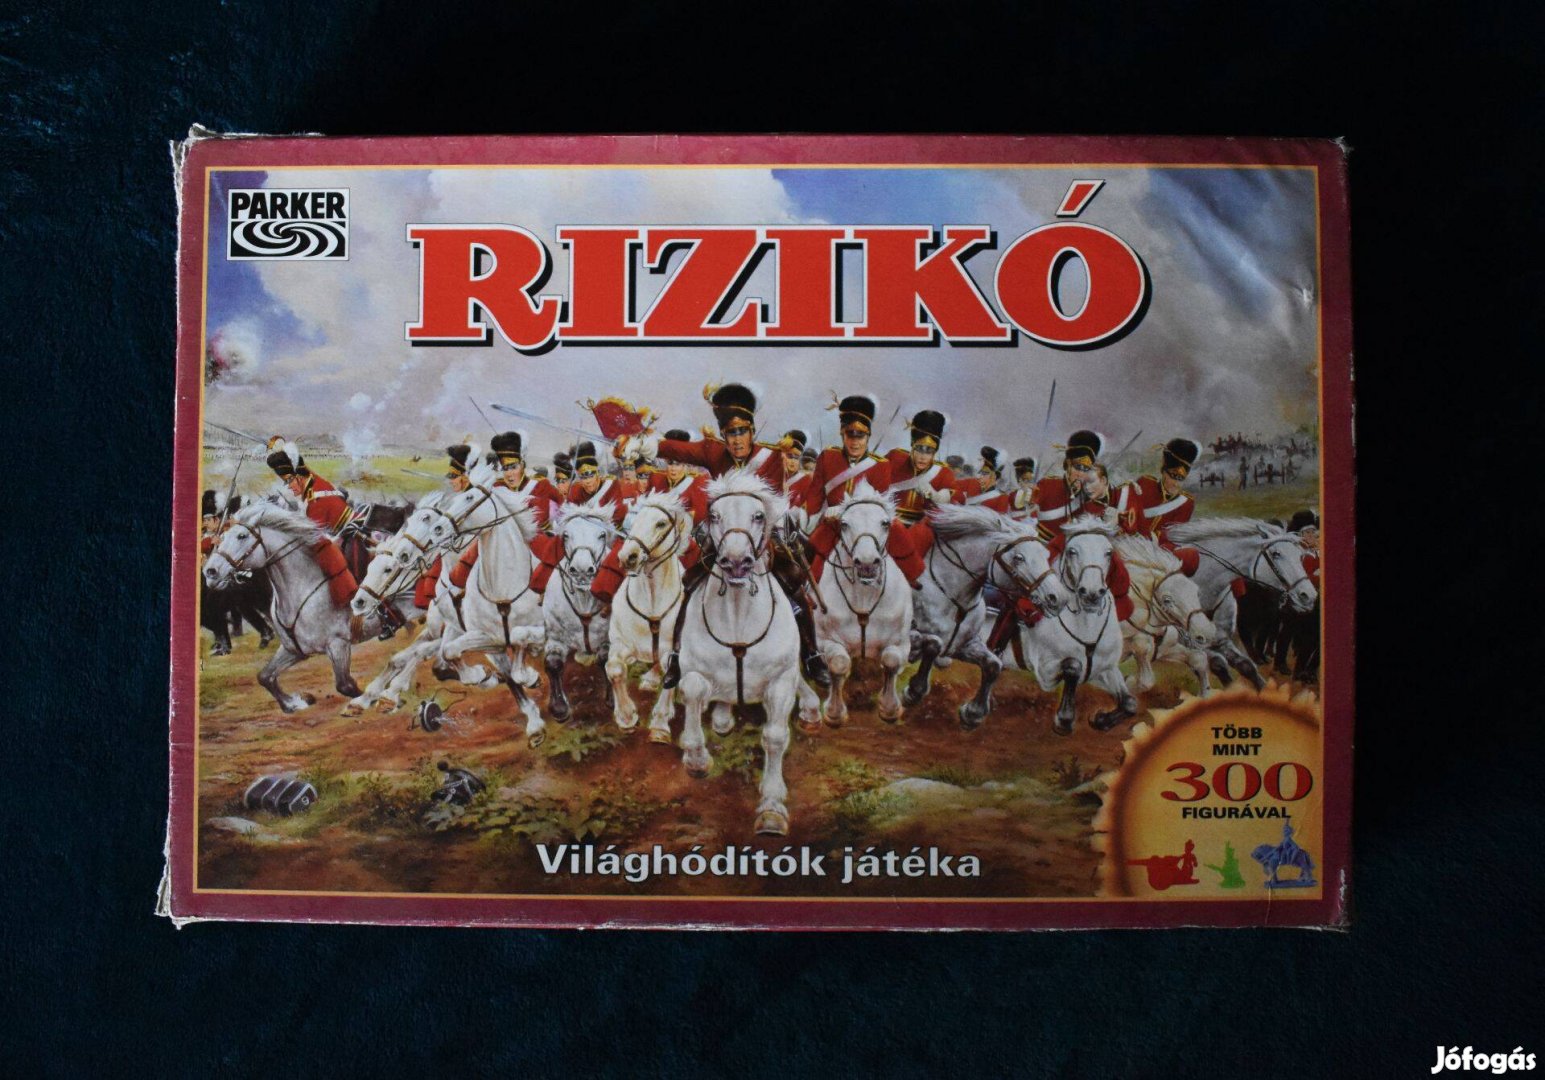 Retro Rizikó magyar nyelvű, hiánytalan társasjáték